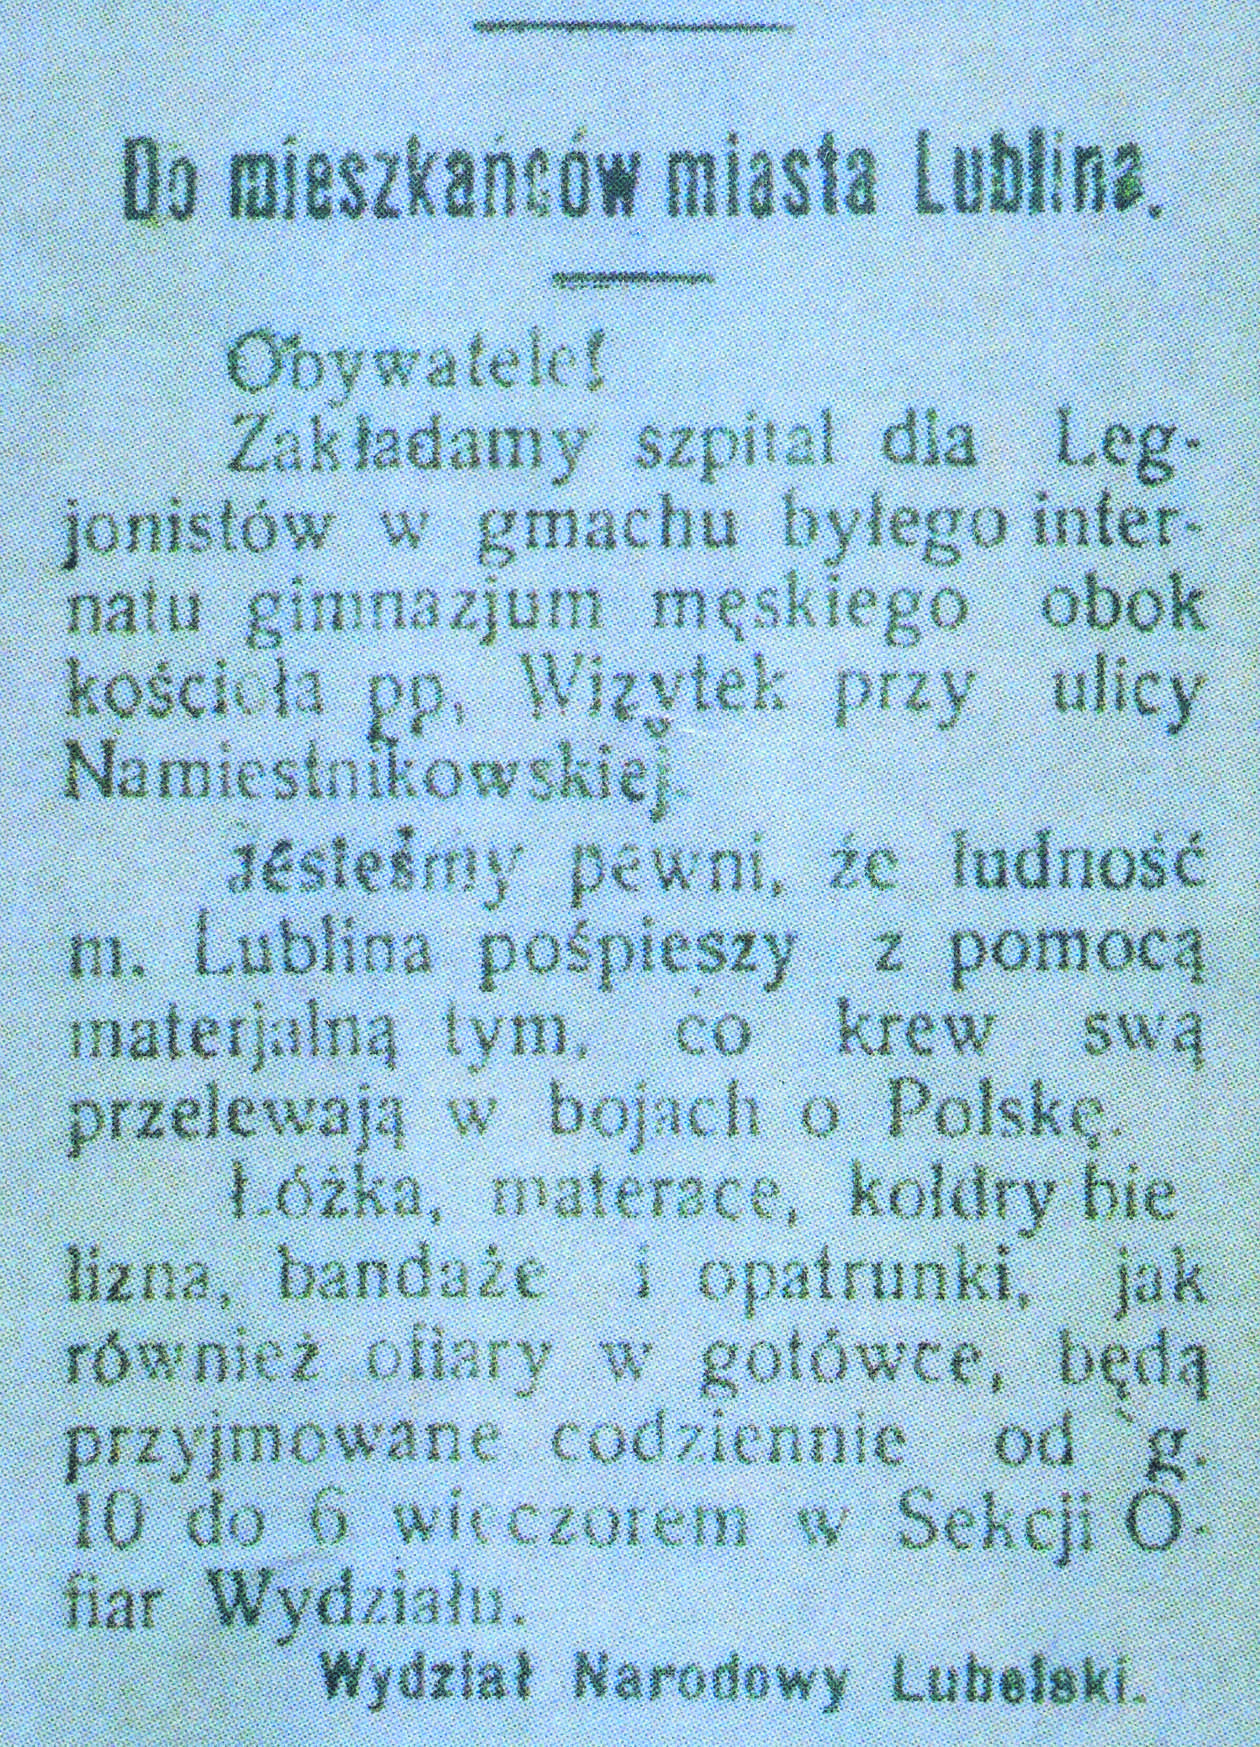  <p>Ogłoszenie z &bdquo;Ziemi Lubelskiej&rdquo; z 8 sierpnia 1915 roku</p>
<p>&nbsp;</p>